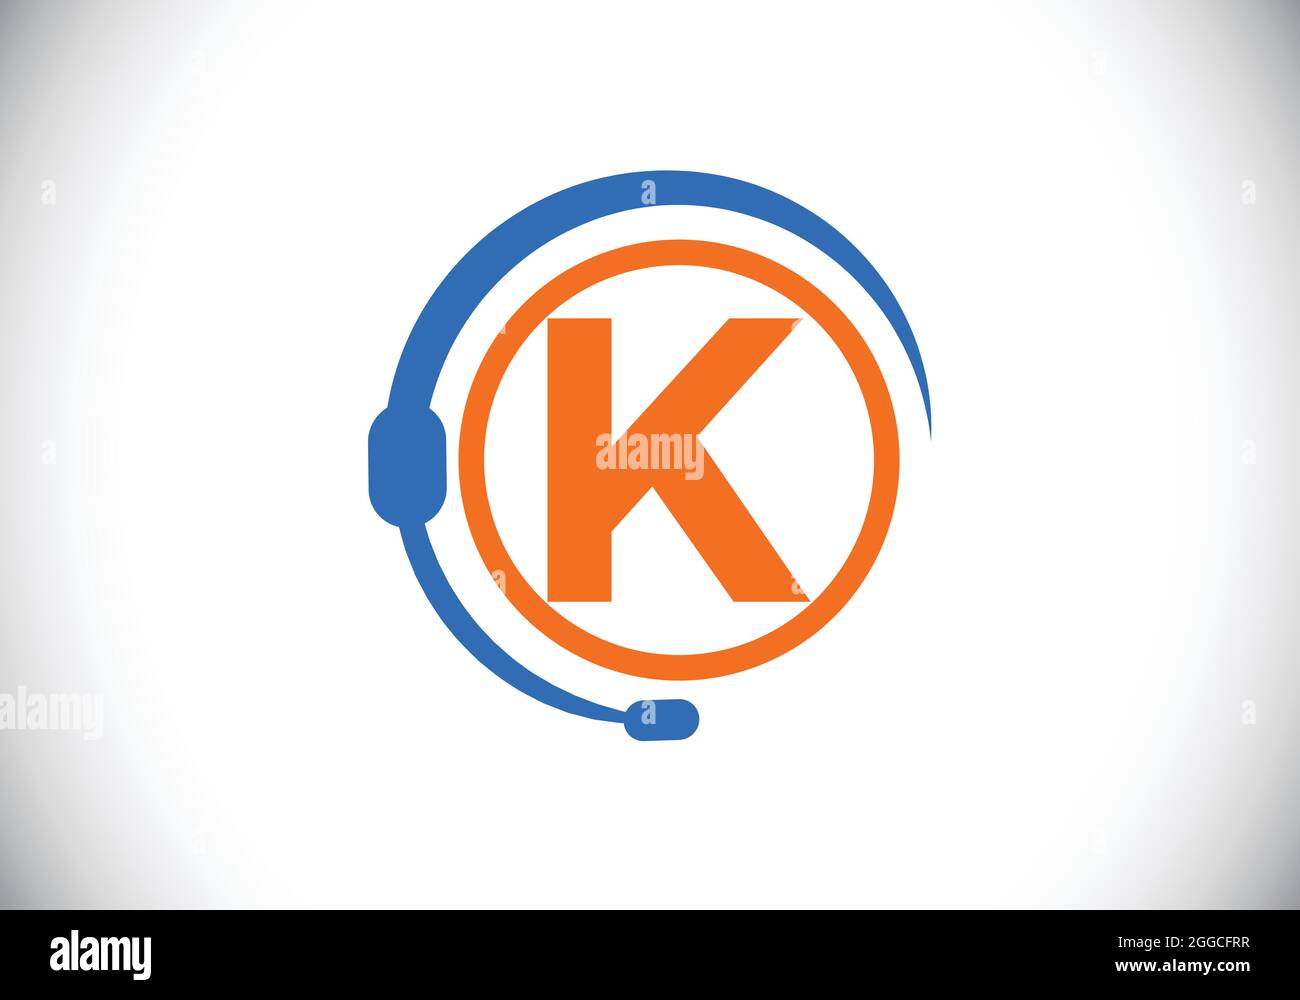 Lettre K initiale du monogramme et service d'assistance avec écouteurs. Logo casque. Assistance téléphonique à la clientèle, aide du centre d'appels. Logo vectoriel moderne Illustration de Vecteur